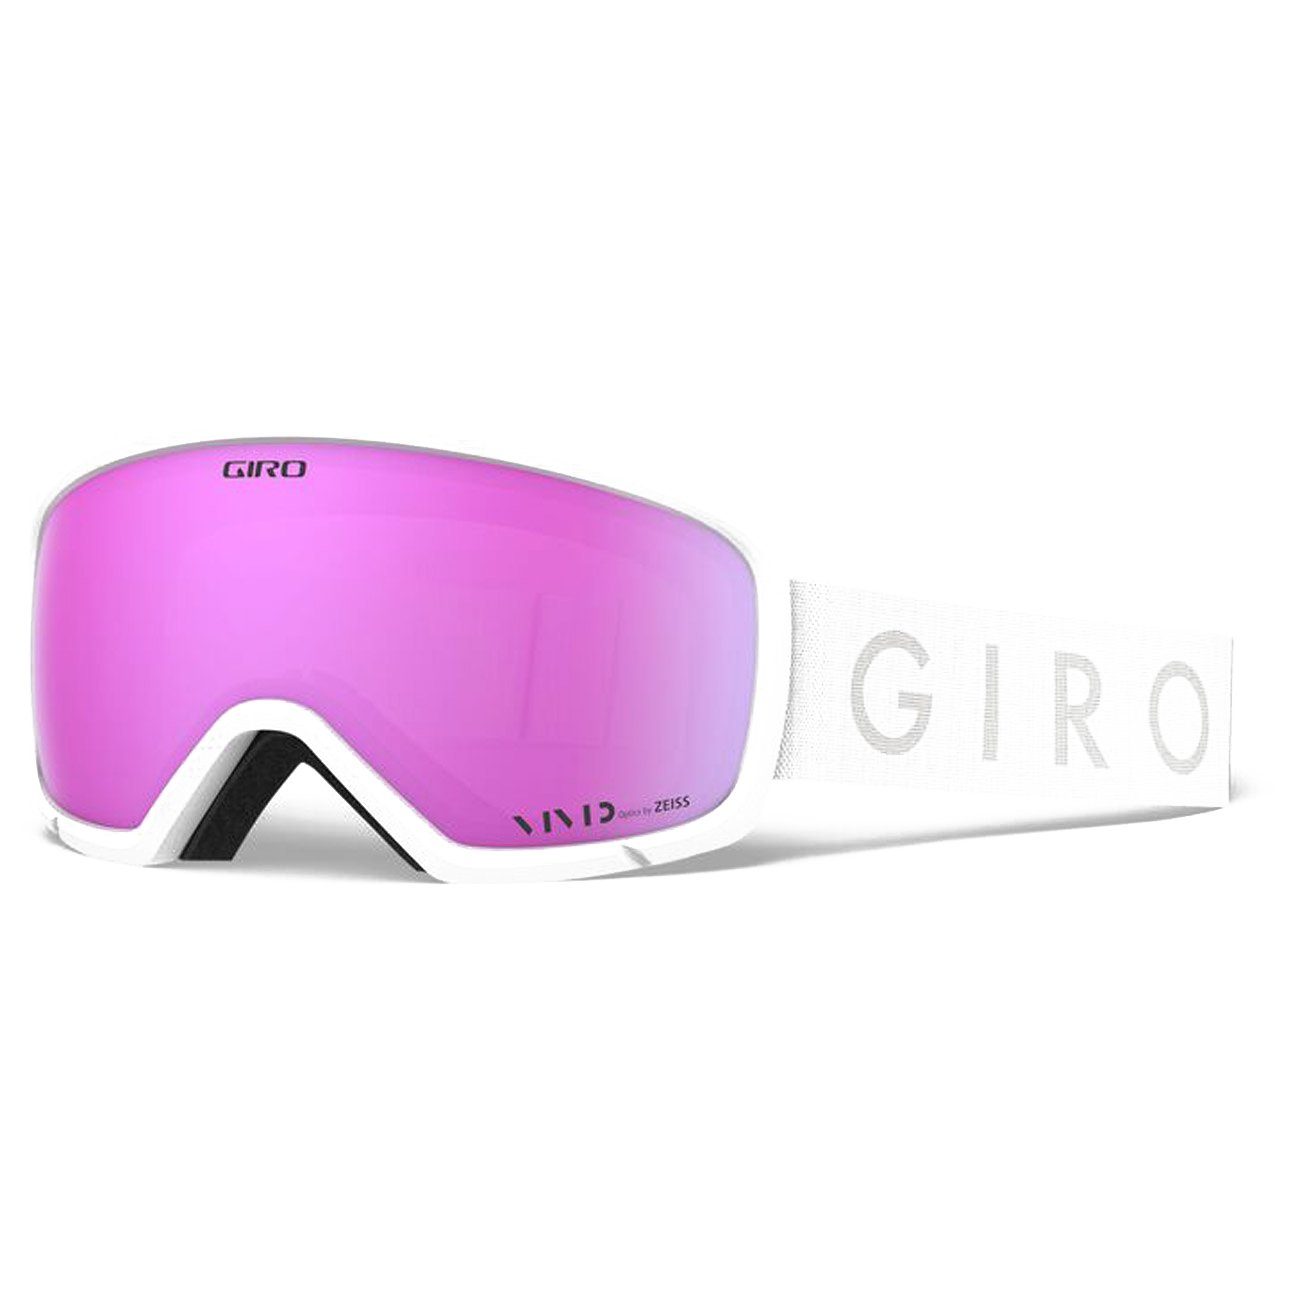 Snowboardbrille, Millie pink light vivid white Giro core